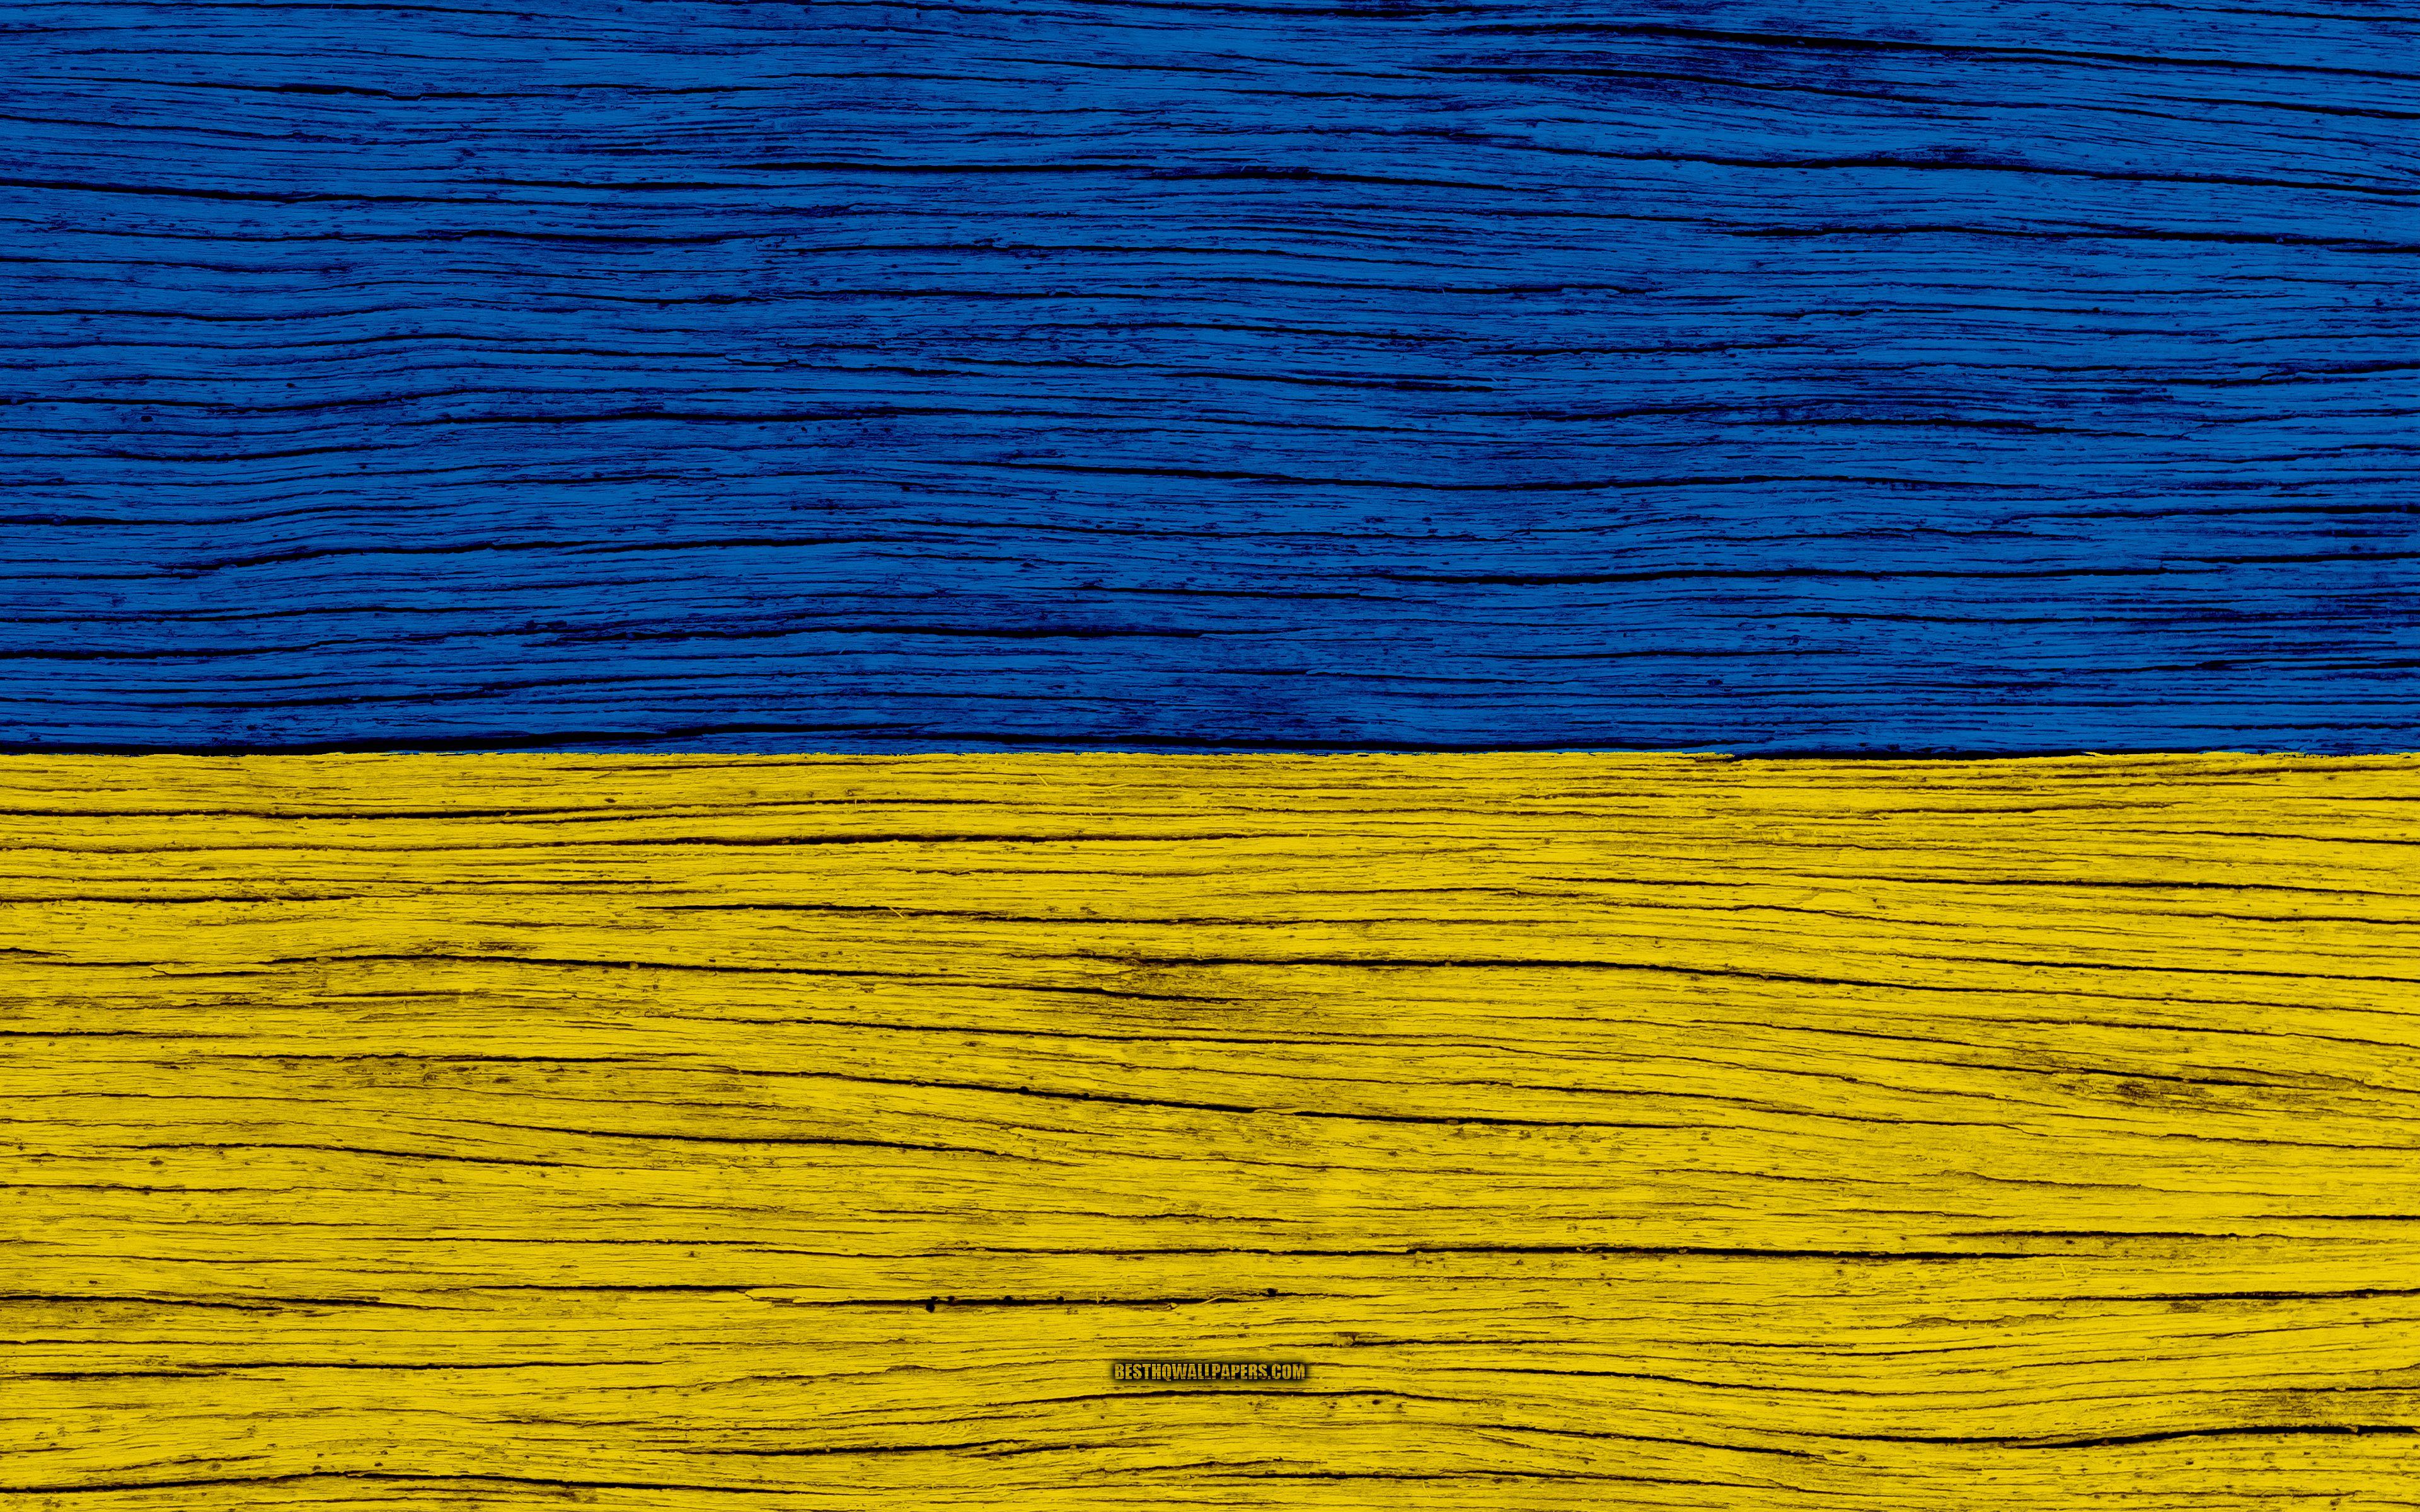 Download wallpaper Flag of Ukraine, 4k, Europe, wooden texture